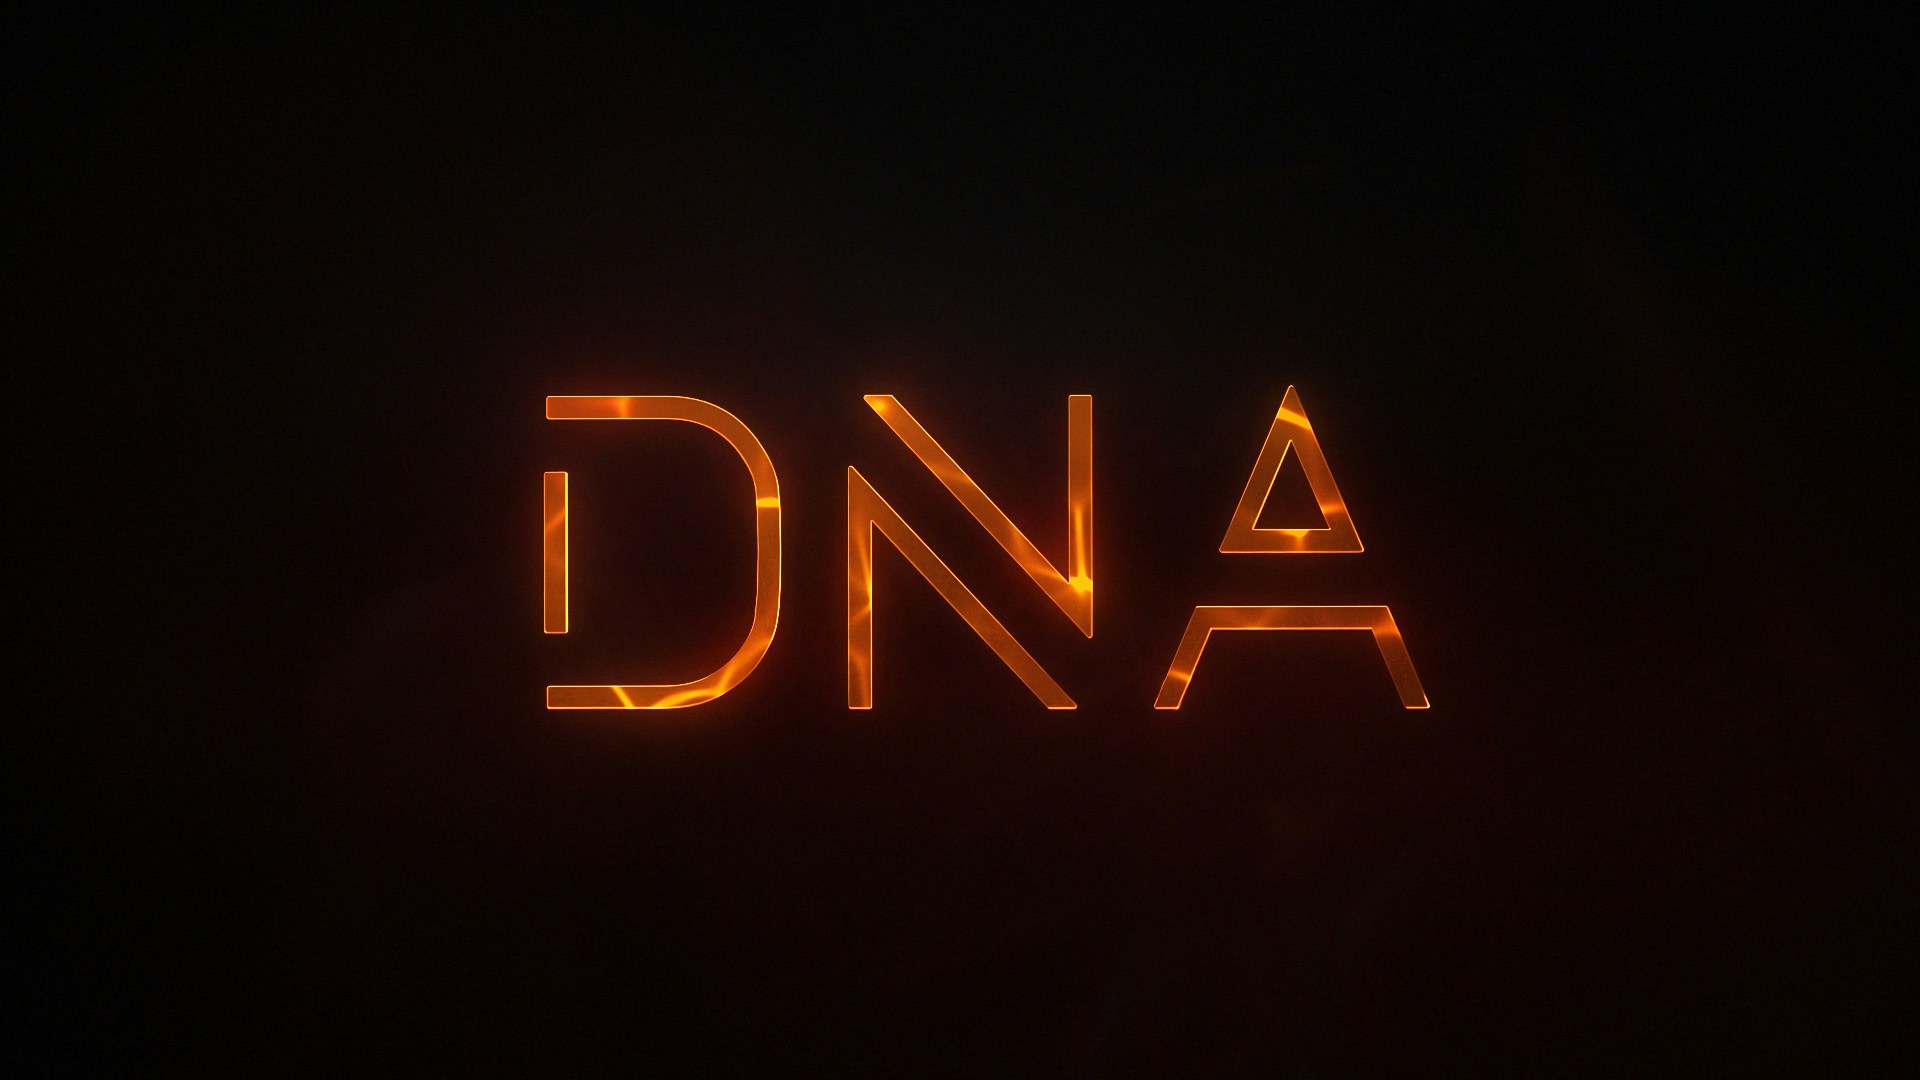 Stiga DNA logo appears